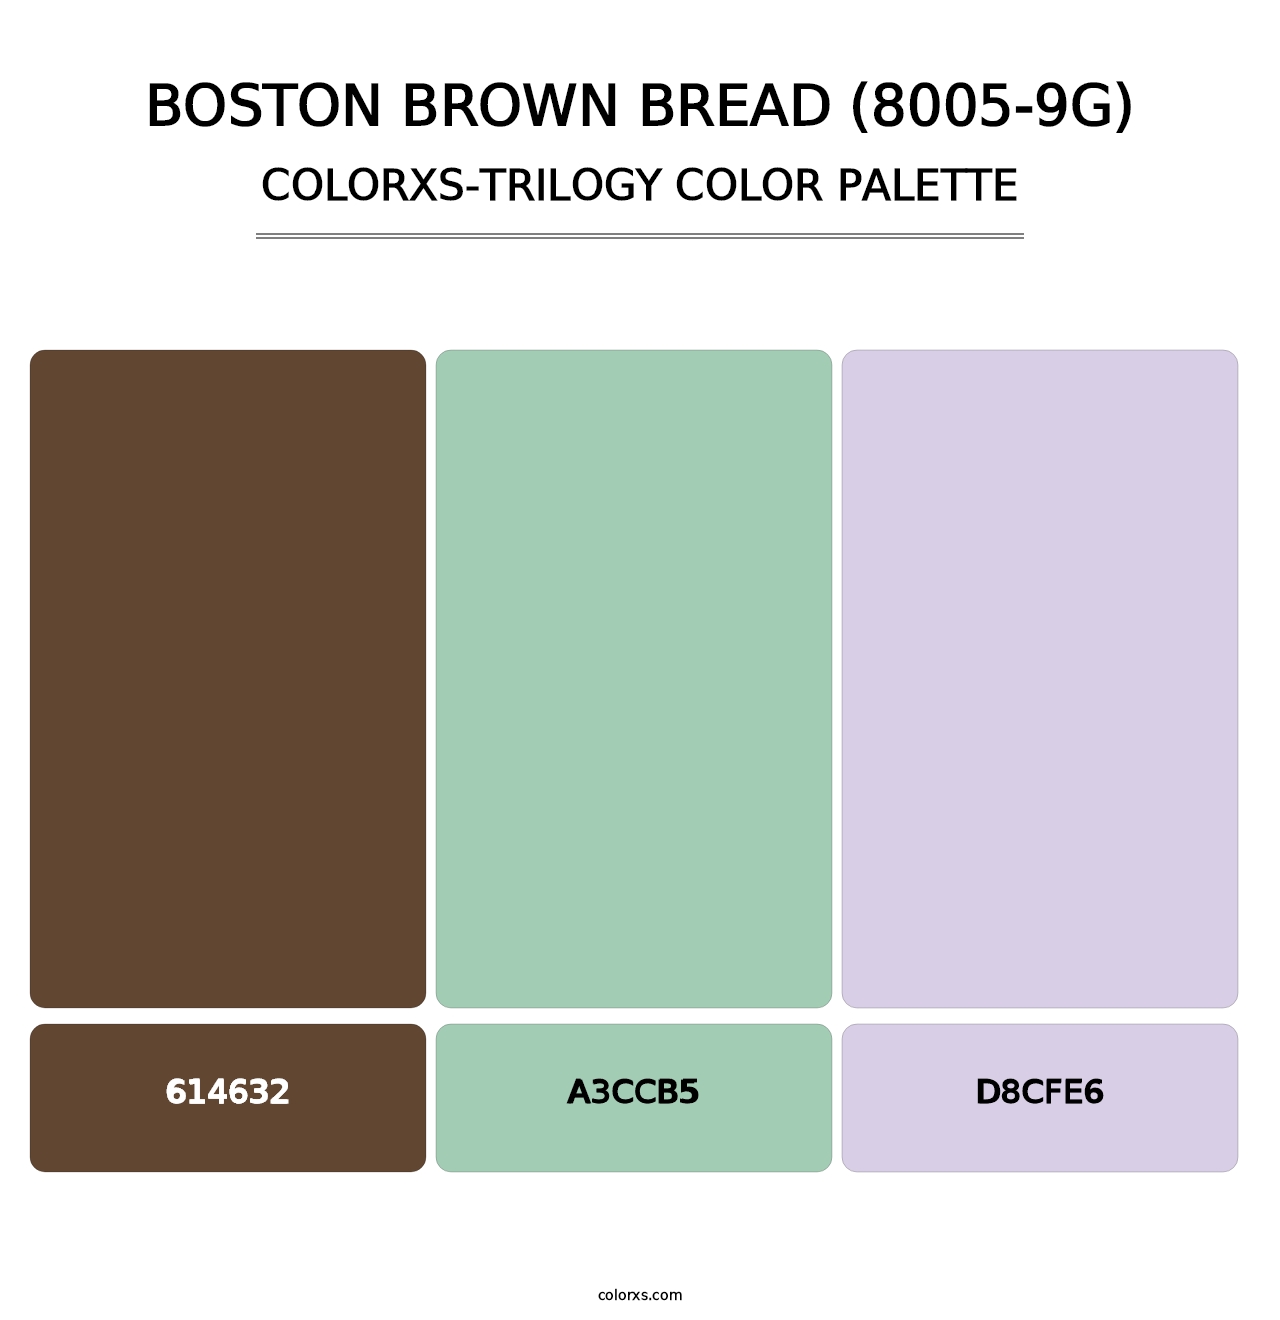 Boston Brown Bread (8005-9G) - Colorxs Trilogy Palette